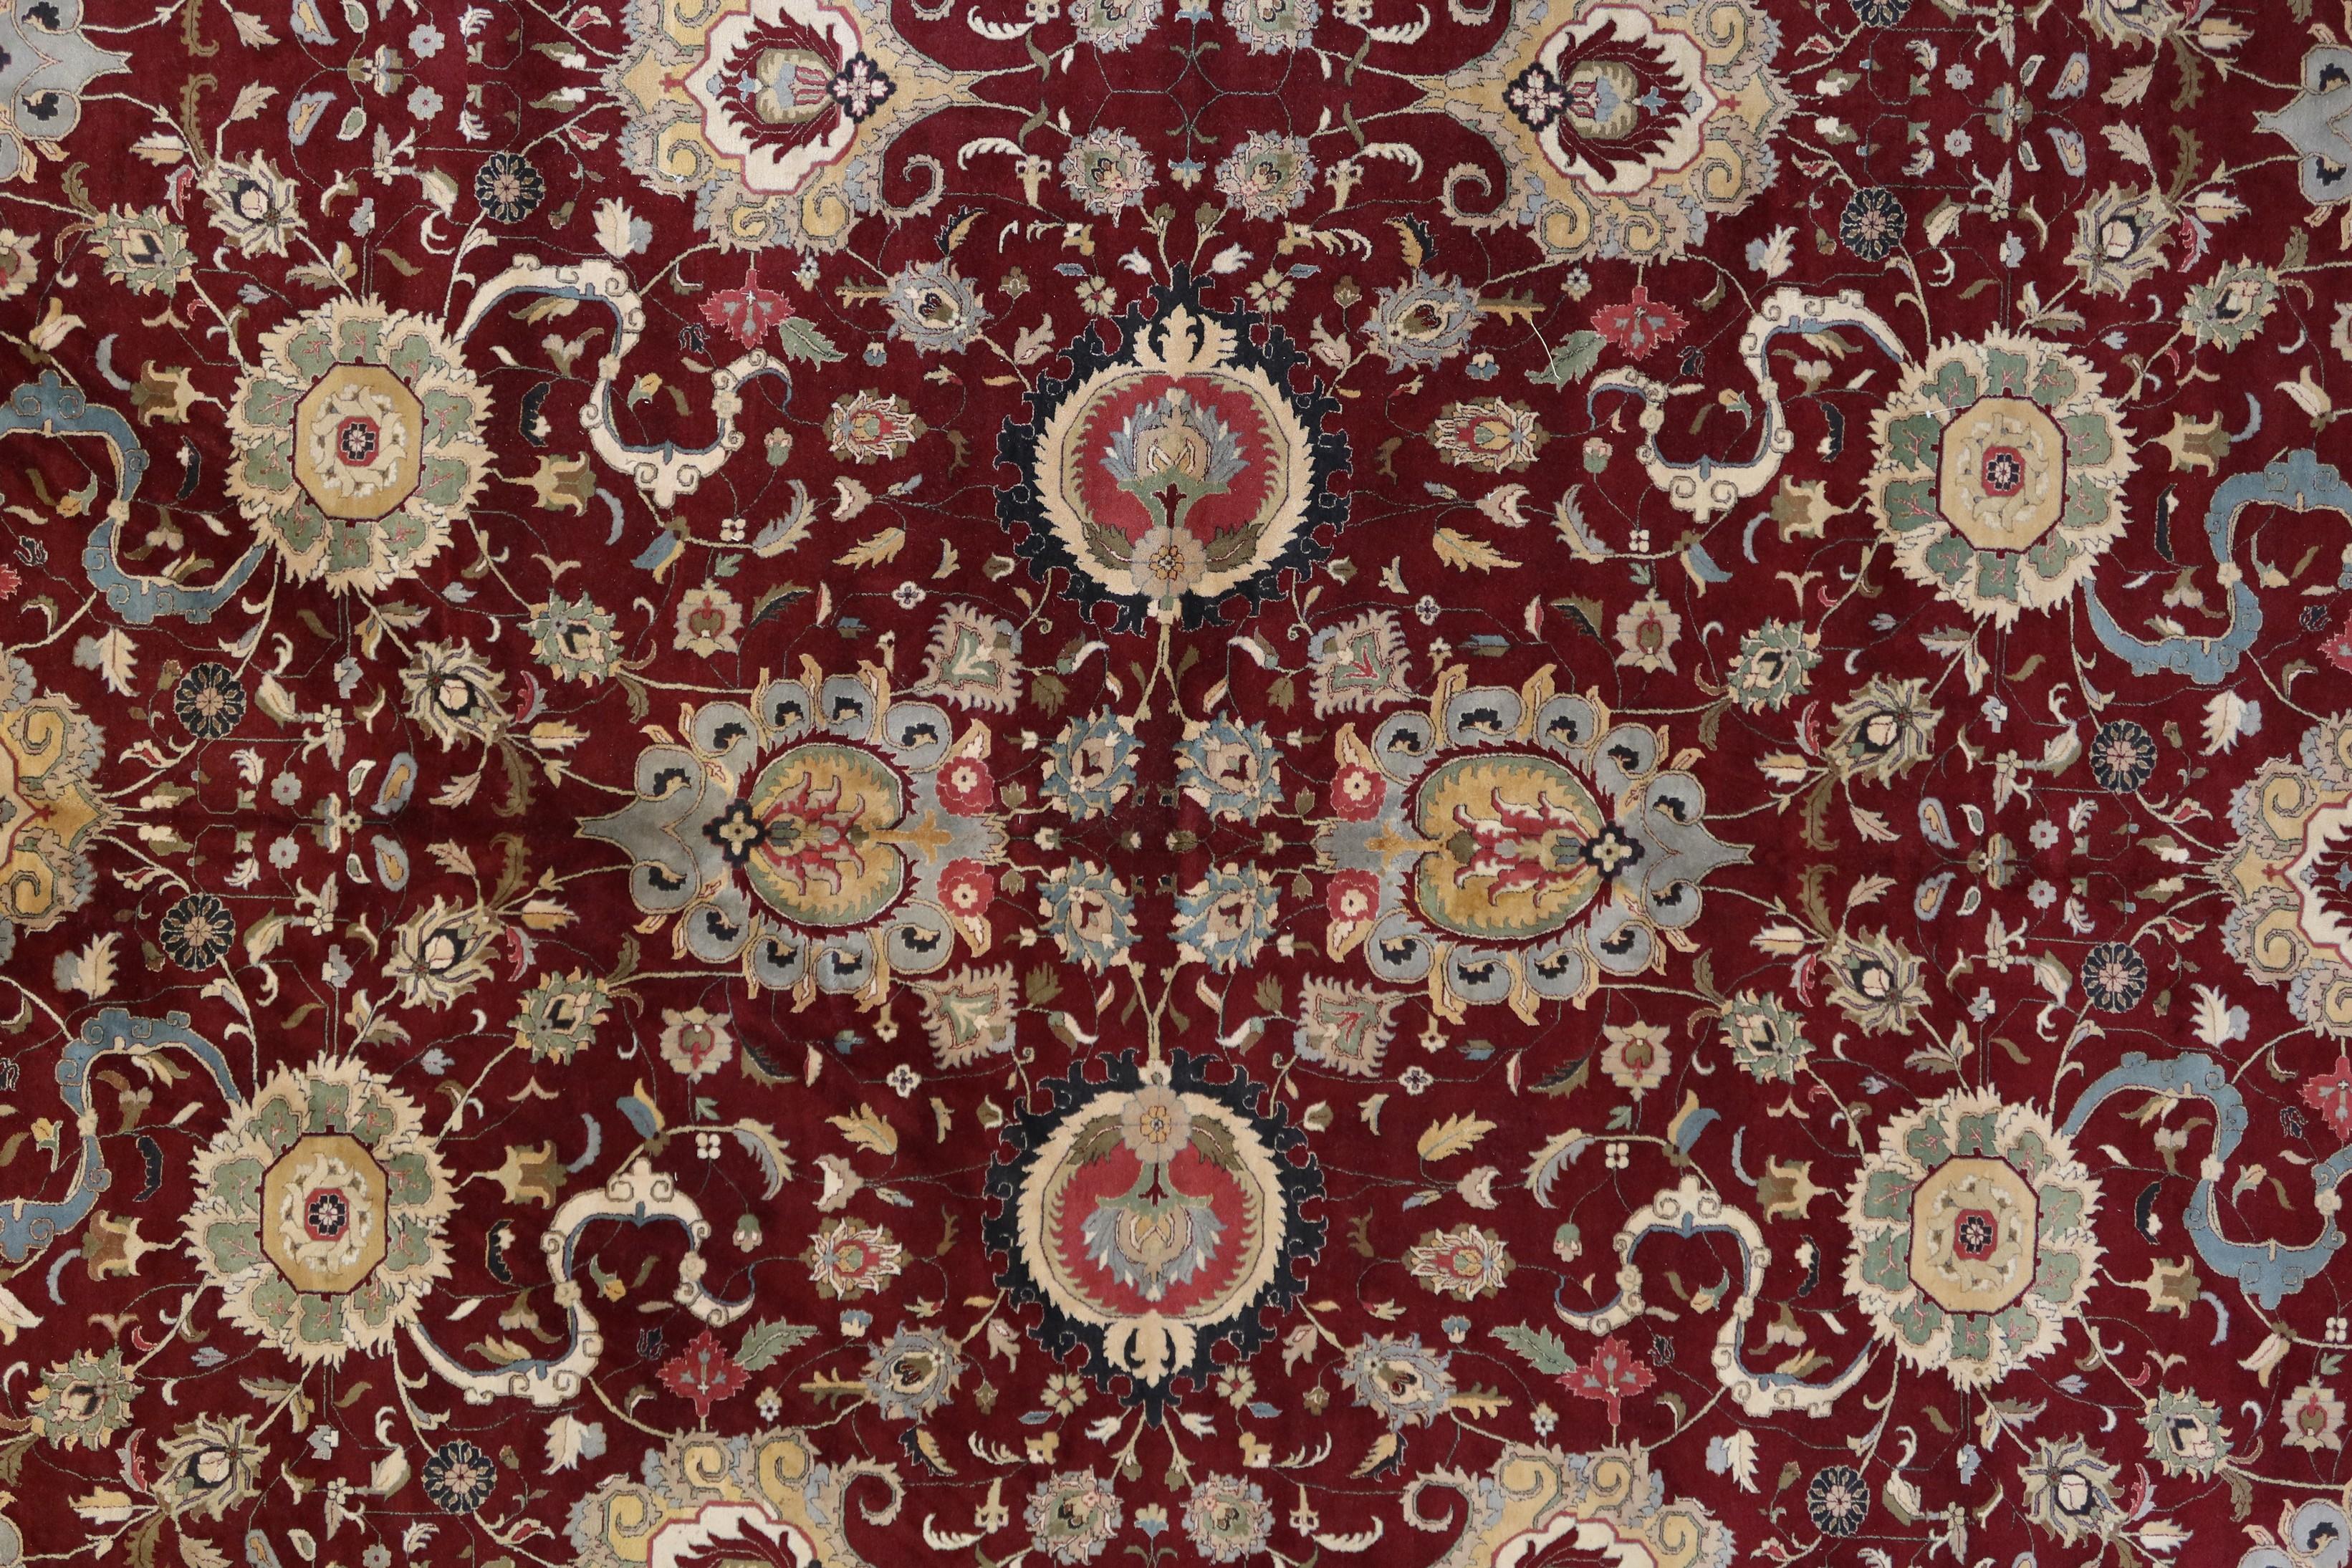 Die Woven Arts Teppichkollektion ist eine sehr genaue Nachbildung der historischen Agra-Teppiche des 18. und 19. Jahrhunderts. Hochwertiges neuseeländisches Garn wird in feiner Handarbeit zu diesen luxuriösen Teppichen geknüpft, die ungewöhnlich